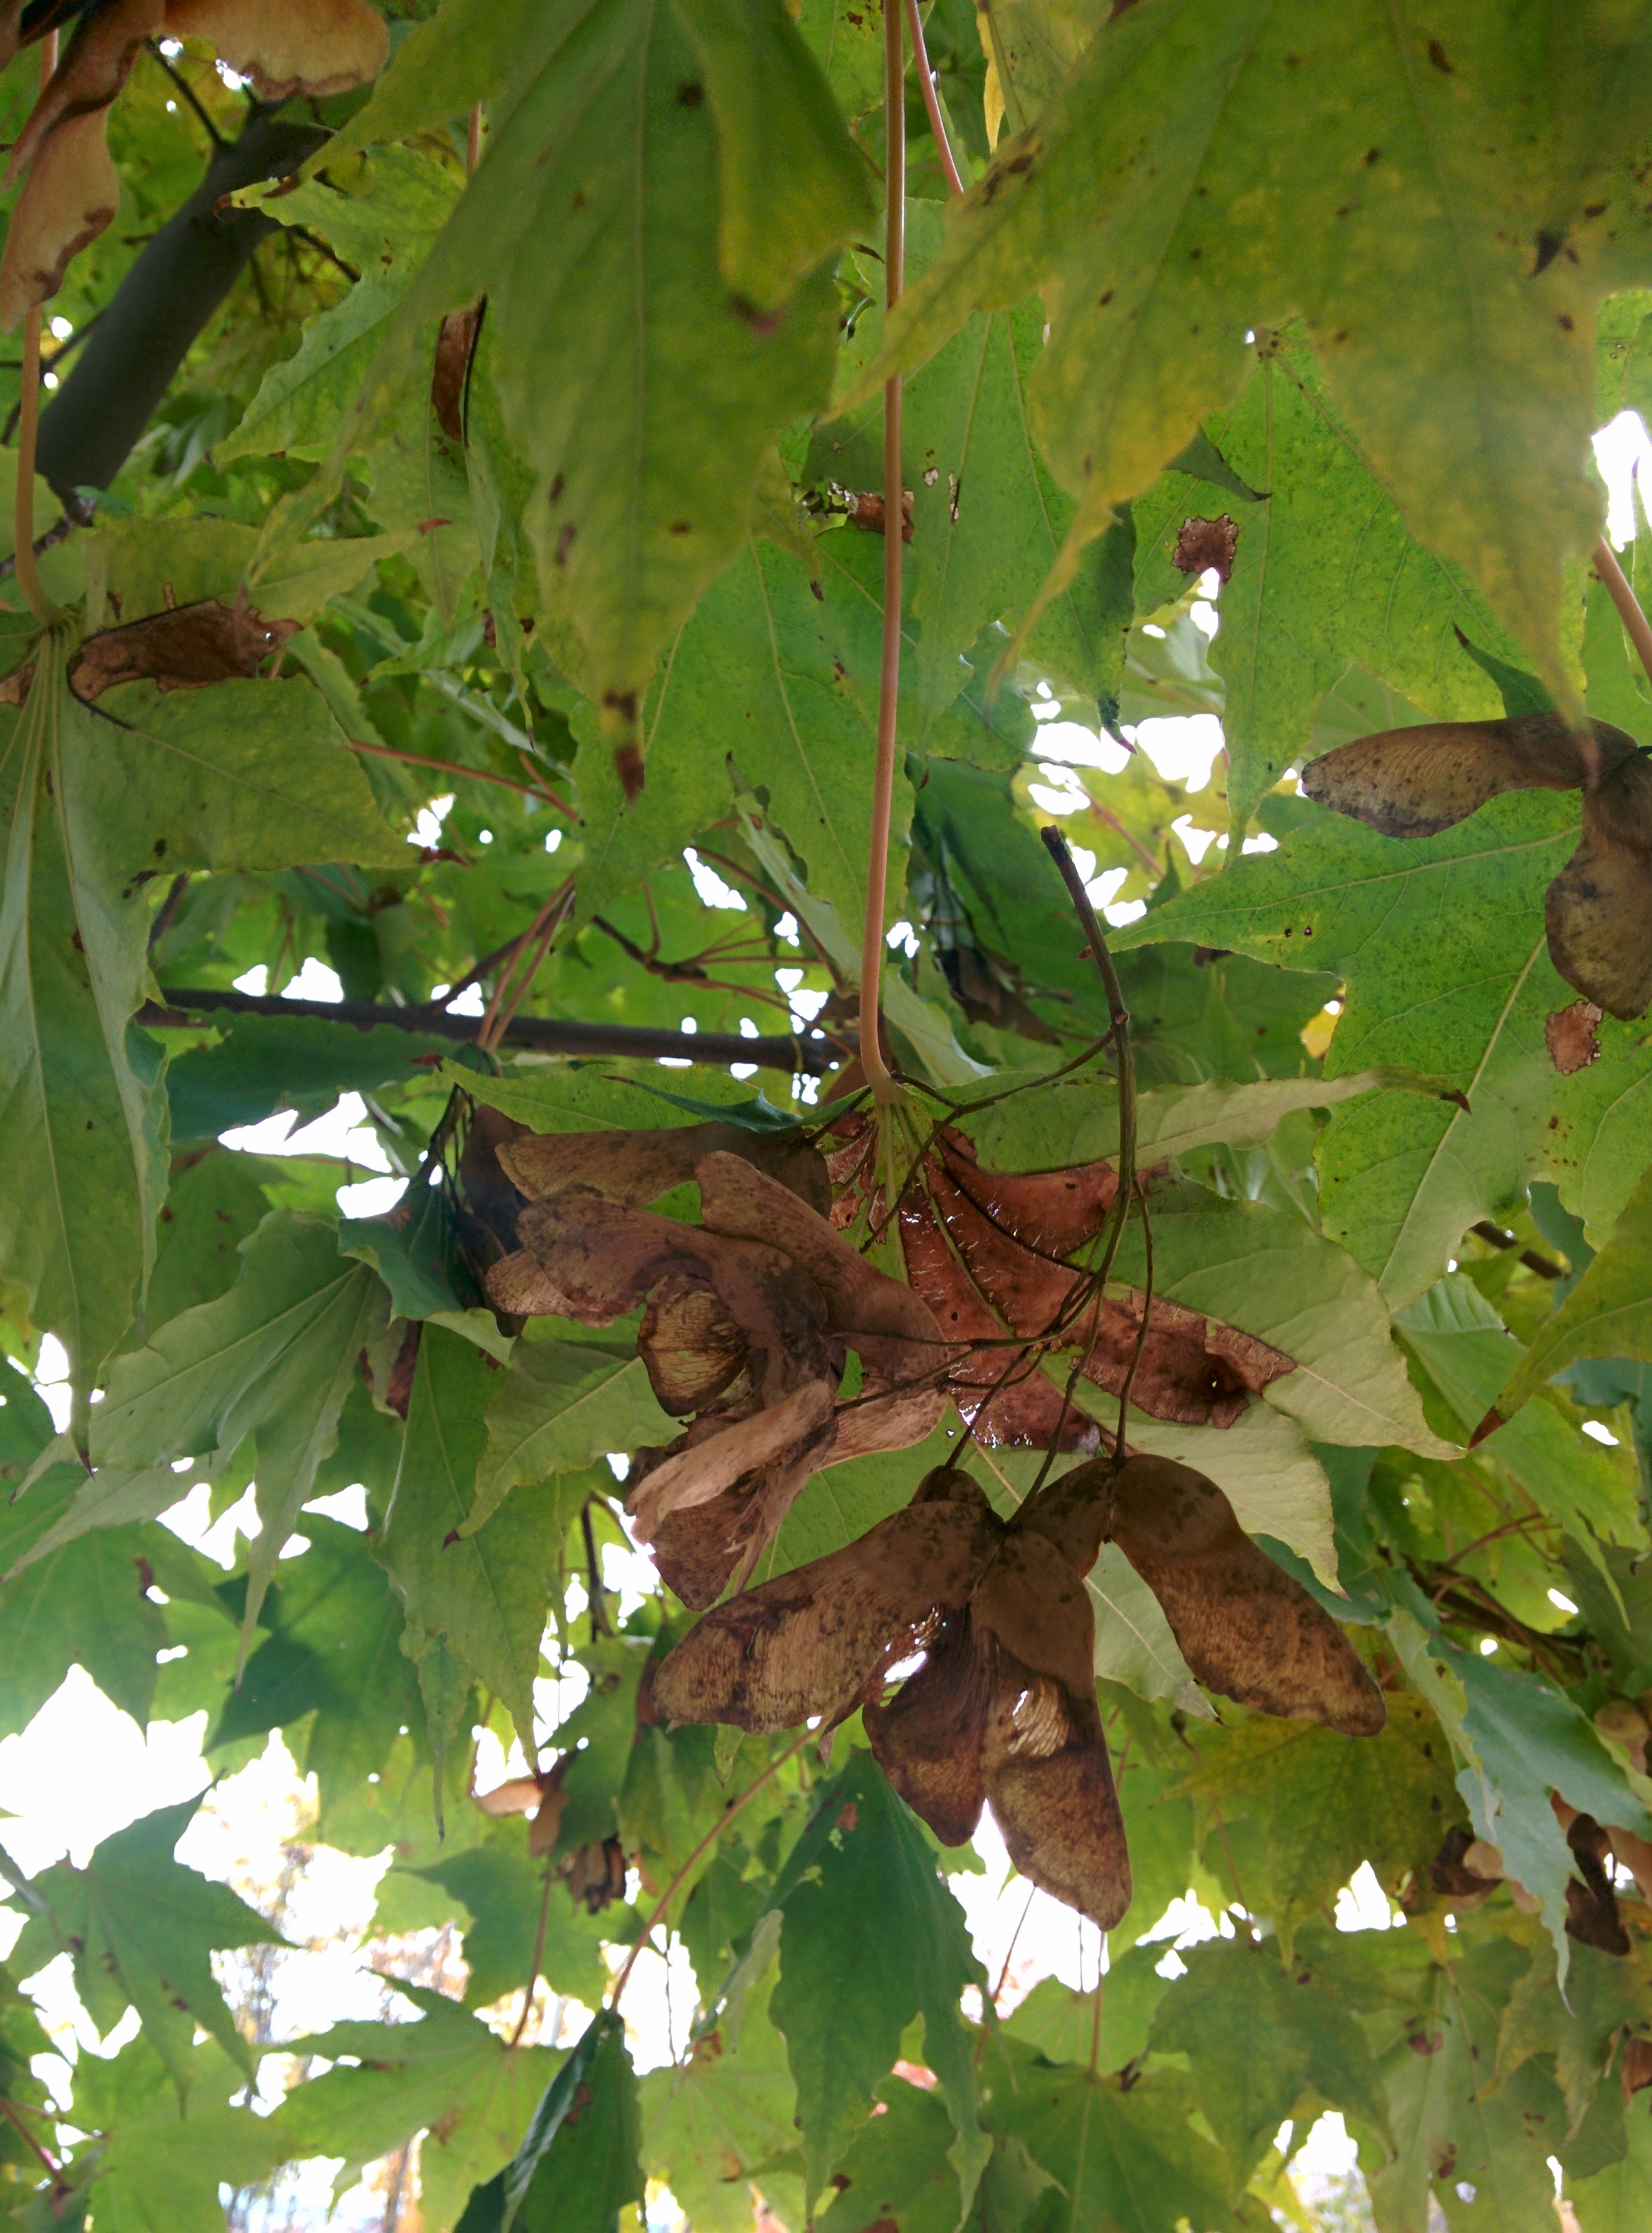 IMG_20151106_150203.jpg 넓적한 잎의 우산고로쇠나무 날개열매